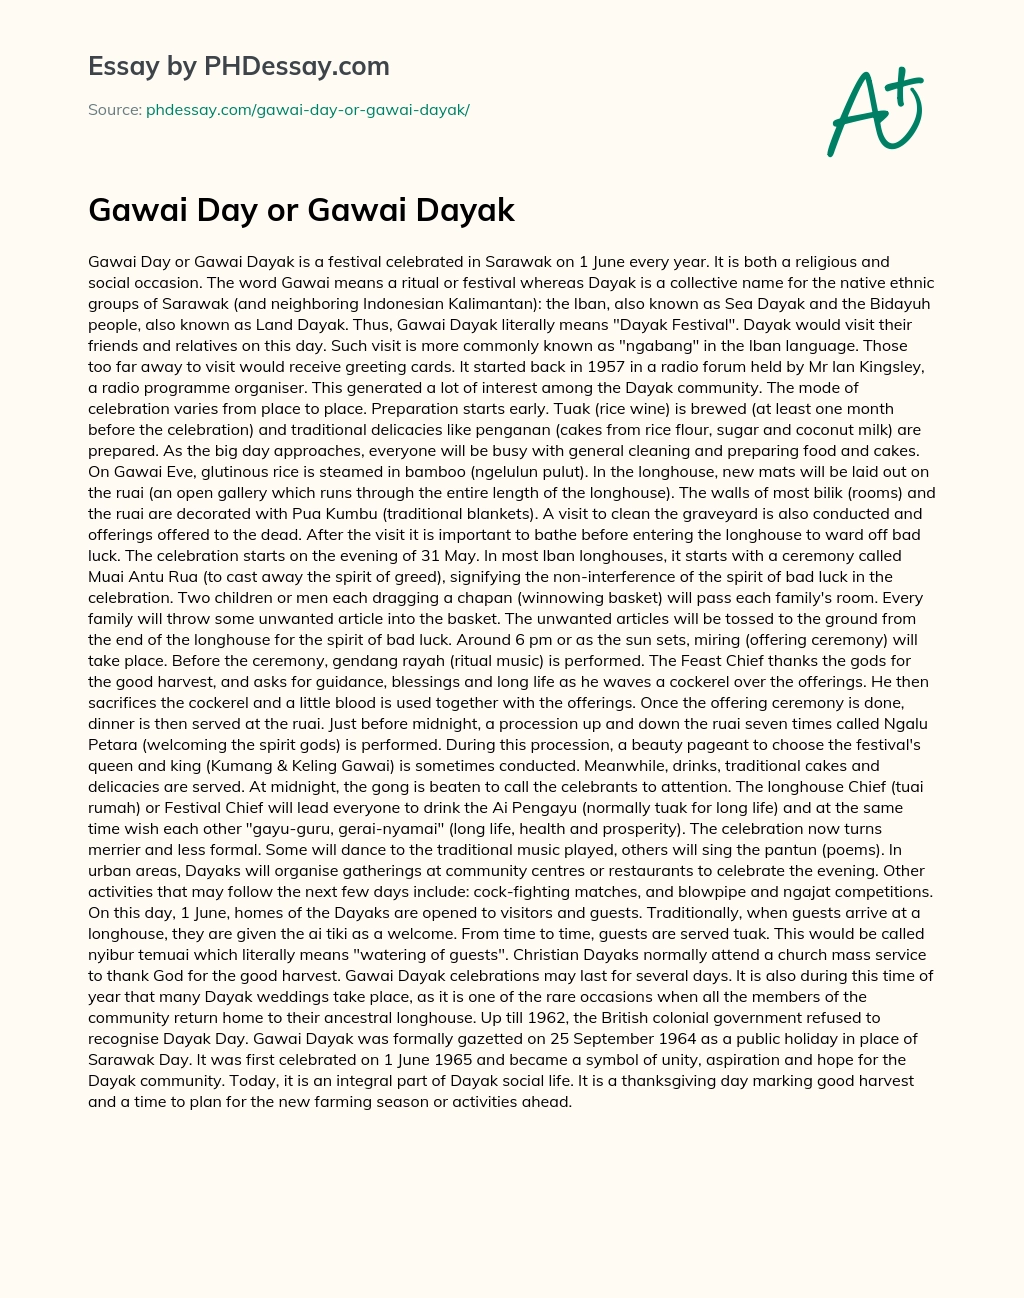 Gawai Day or Gawai Dayak essay